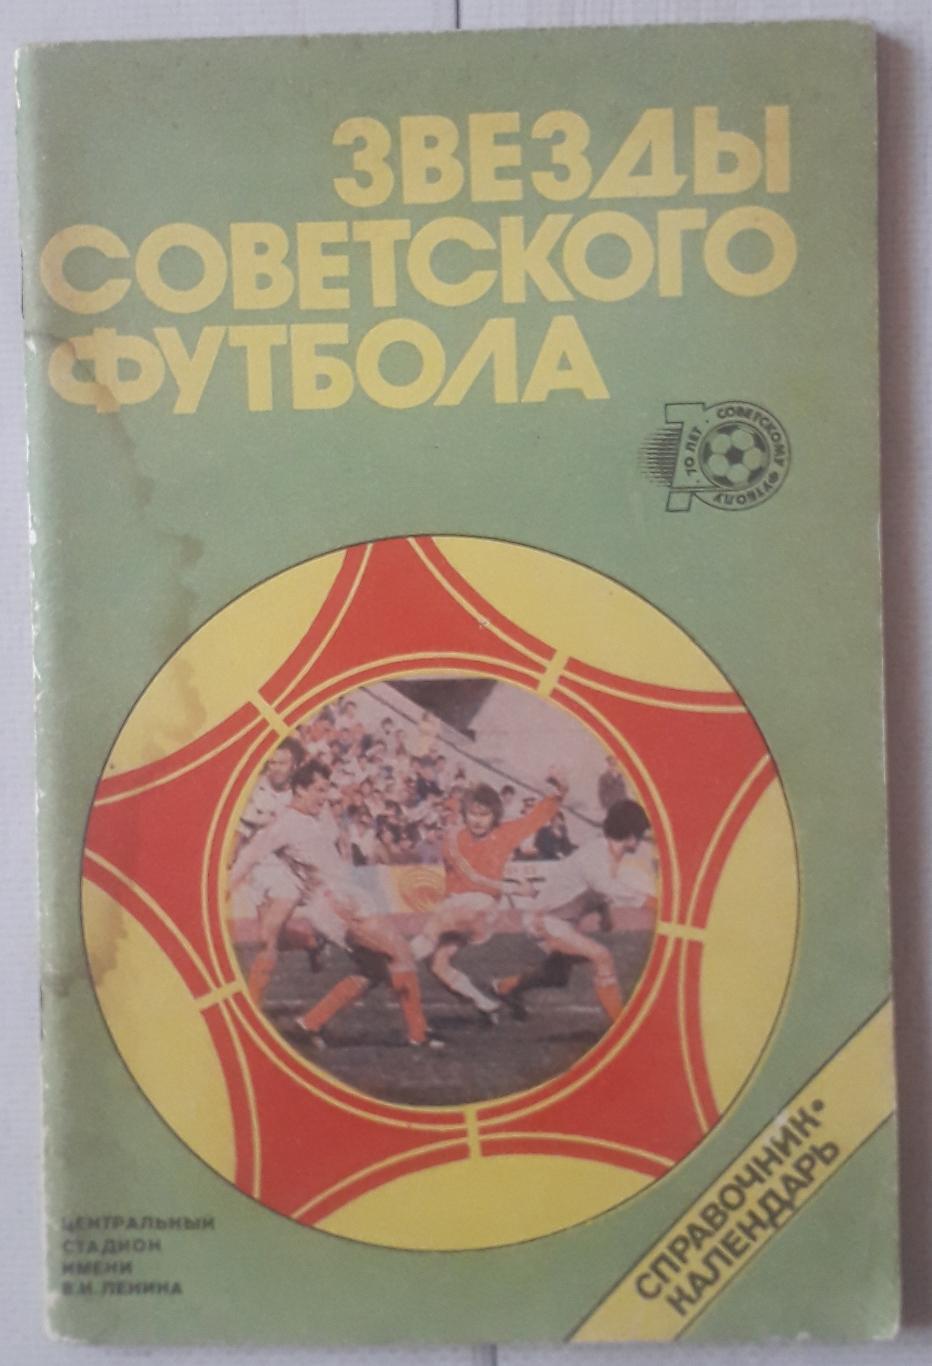 Справочник-календарь. Звезды Советского футбола 1918-1987